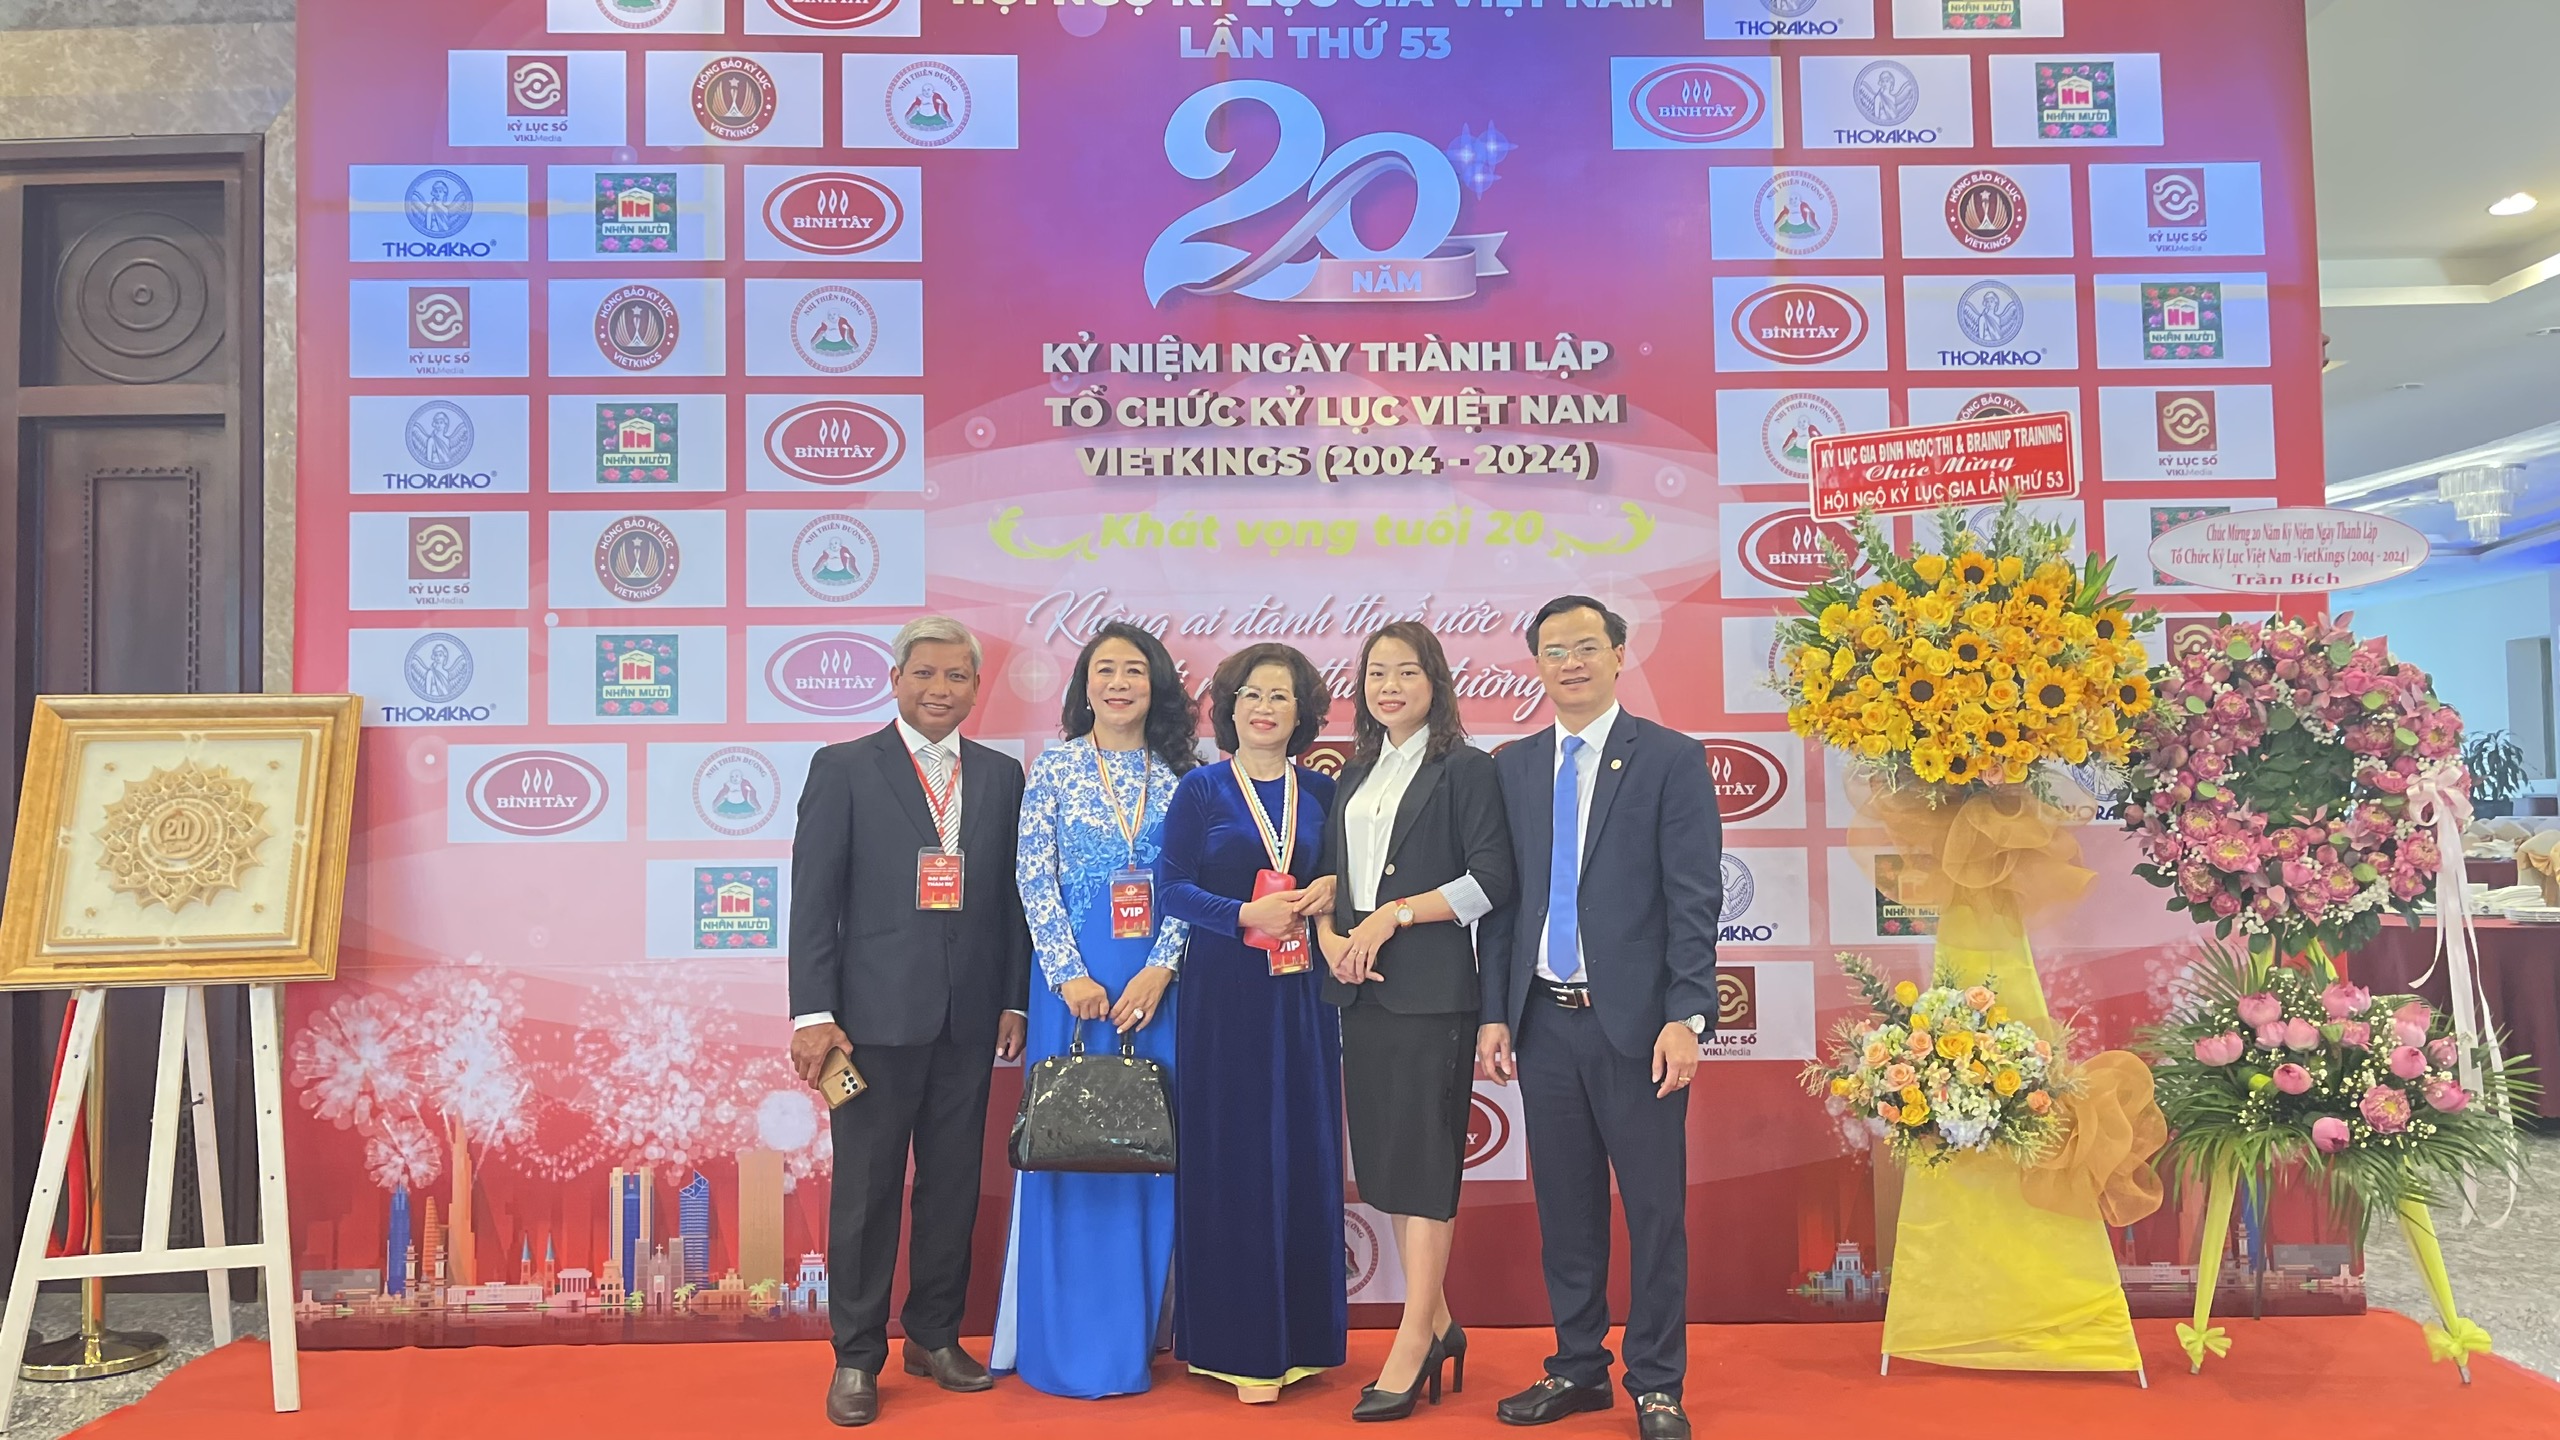 Đoàn lãnh đạo Lien Minh Group tham dự chương trình Hội ngộ Kỷ lục Việt Nam lần 53.